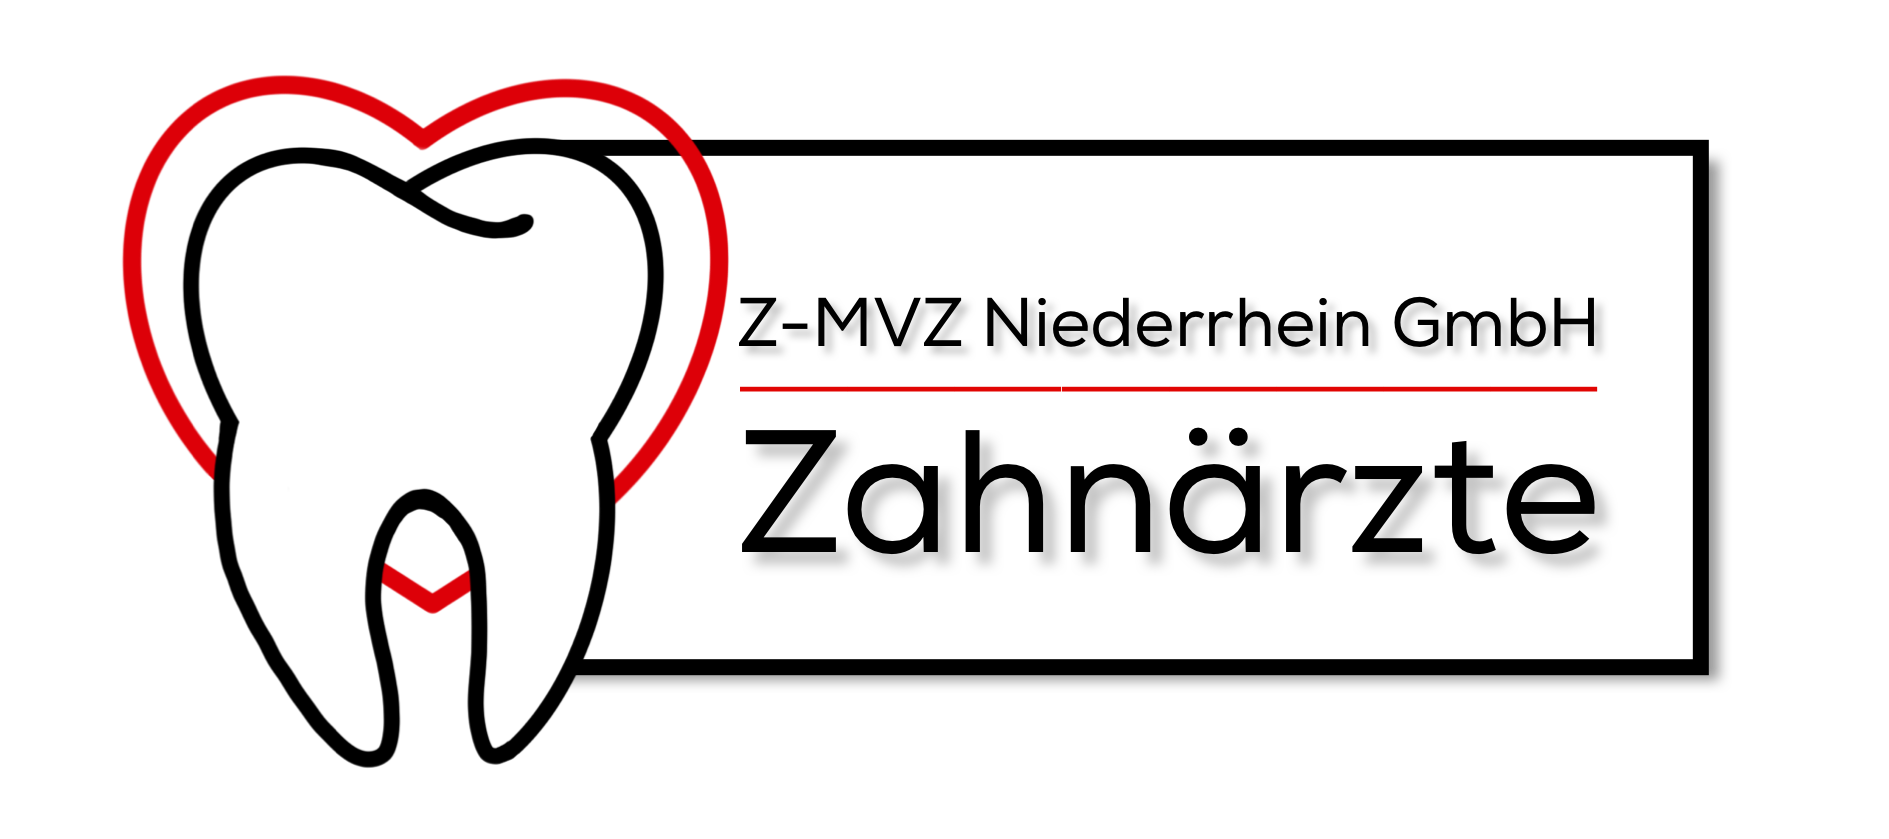 Z-MVZ Niederrhein